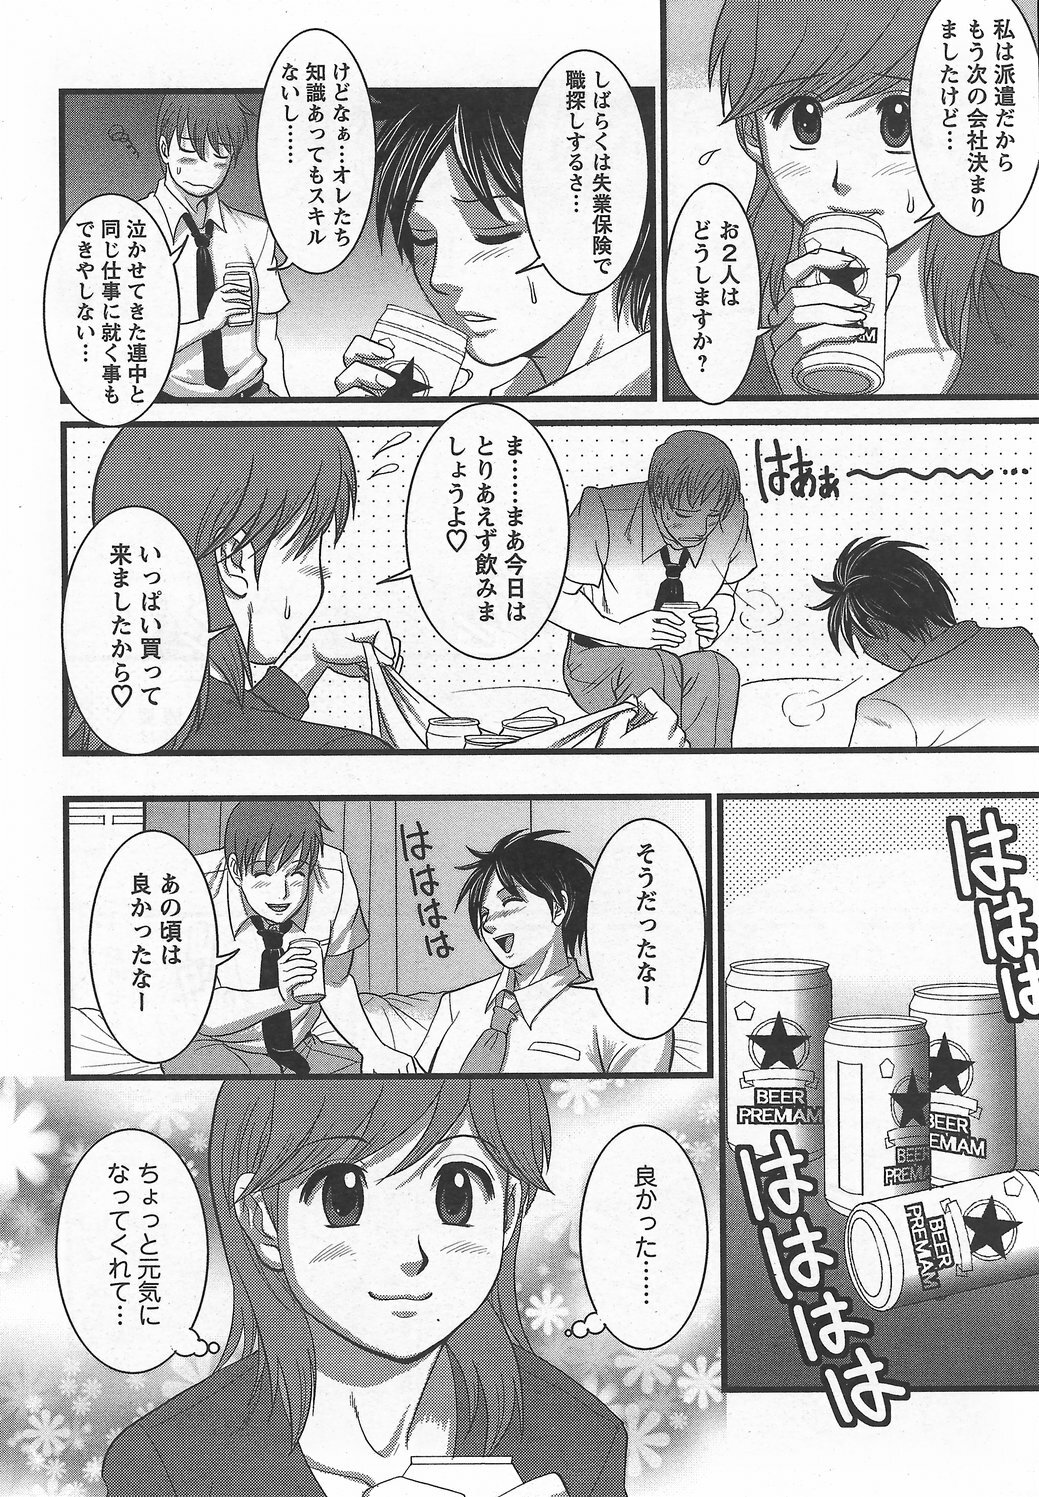 Haken no Muuko-san 6 [Saigado] page 11 full